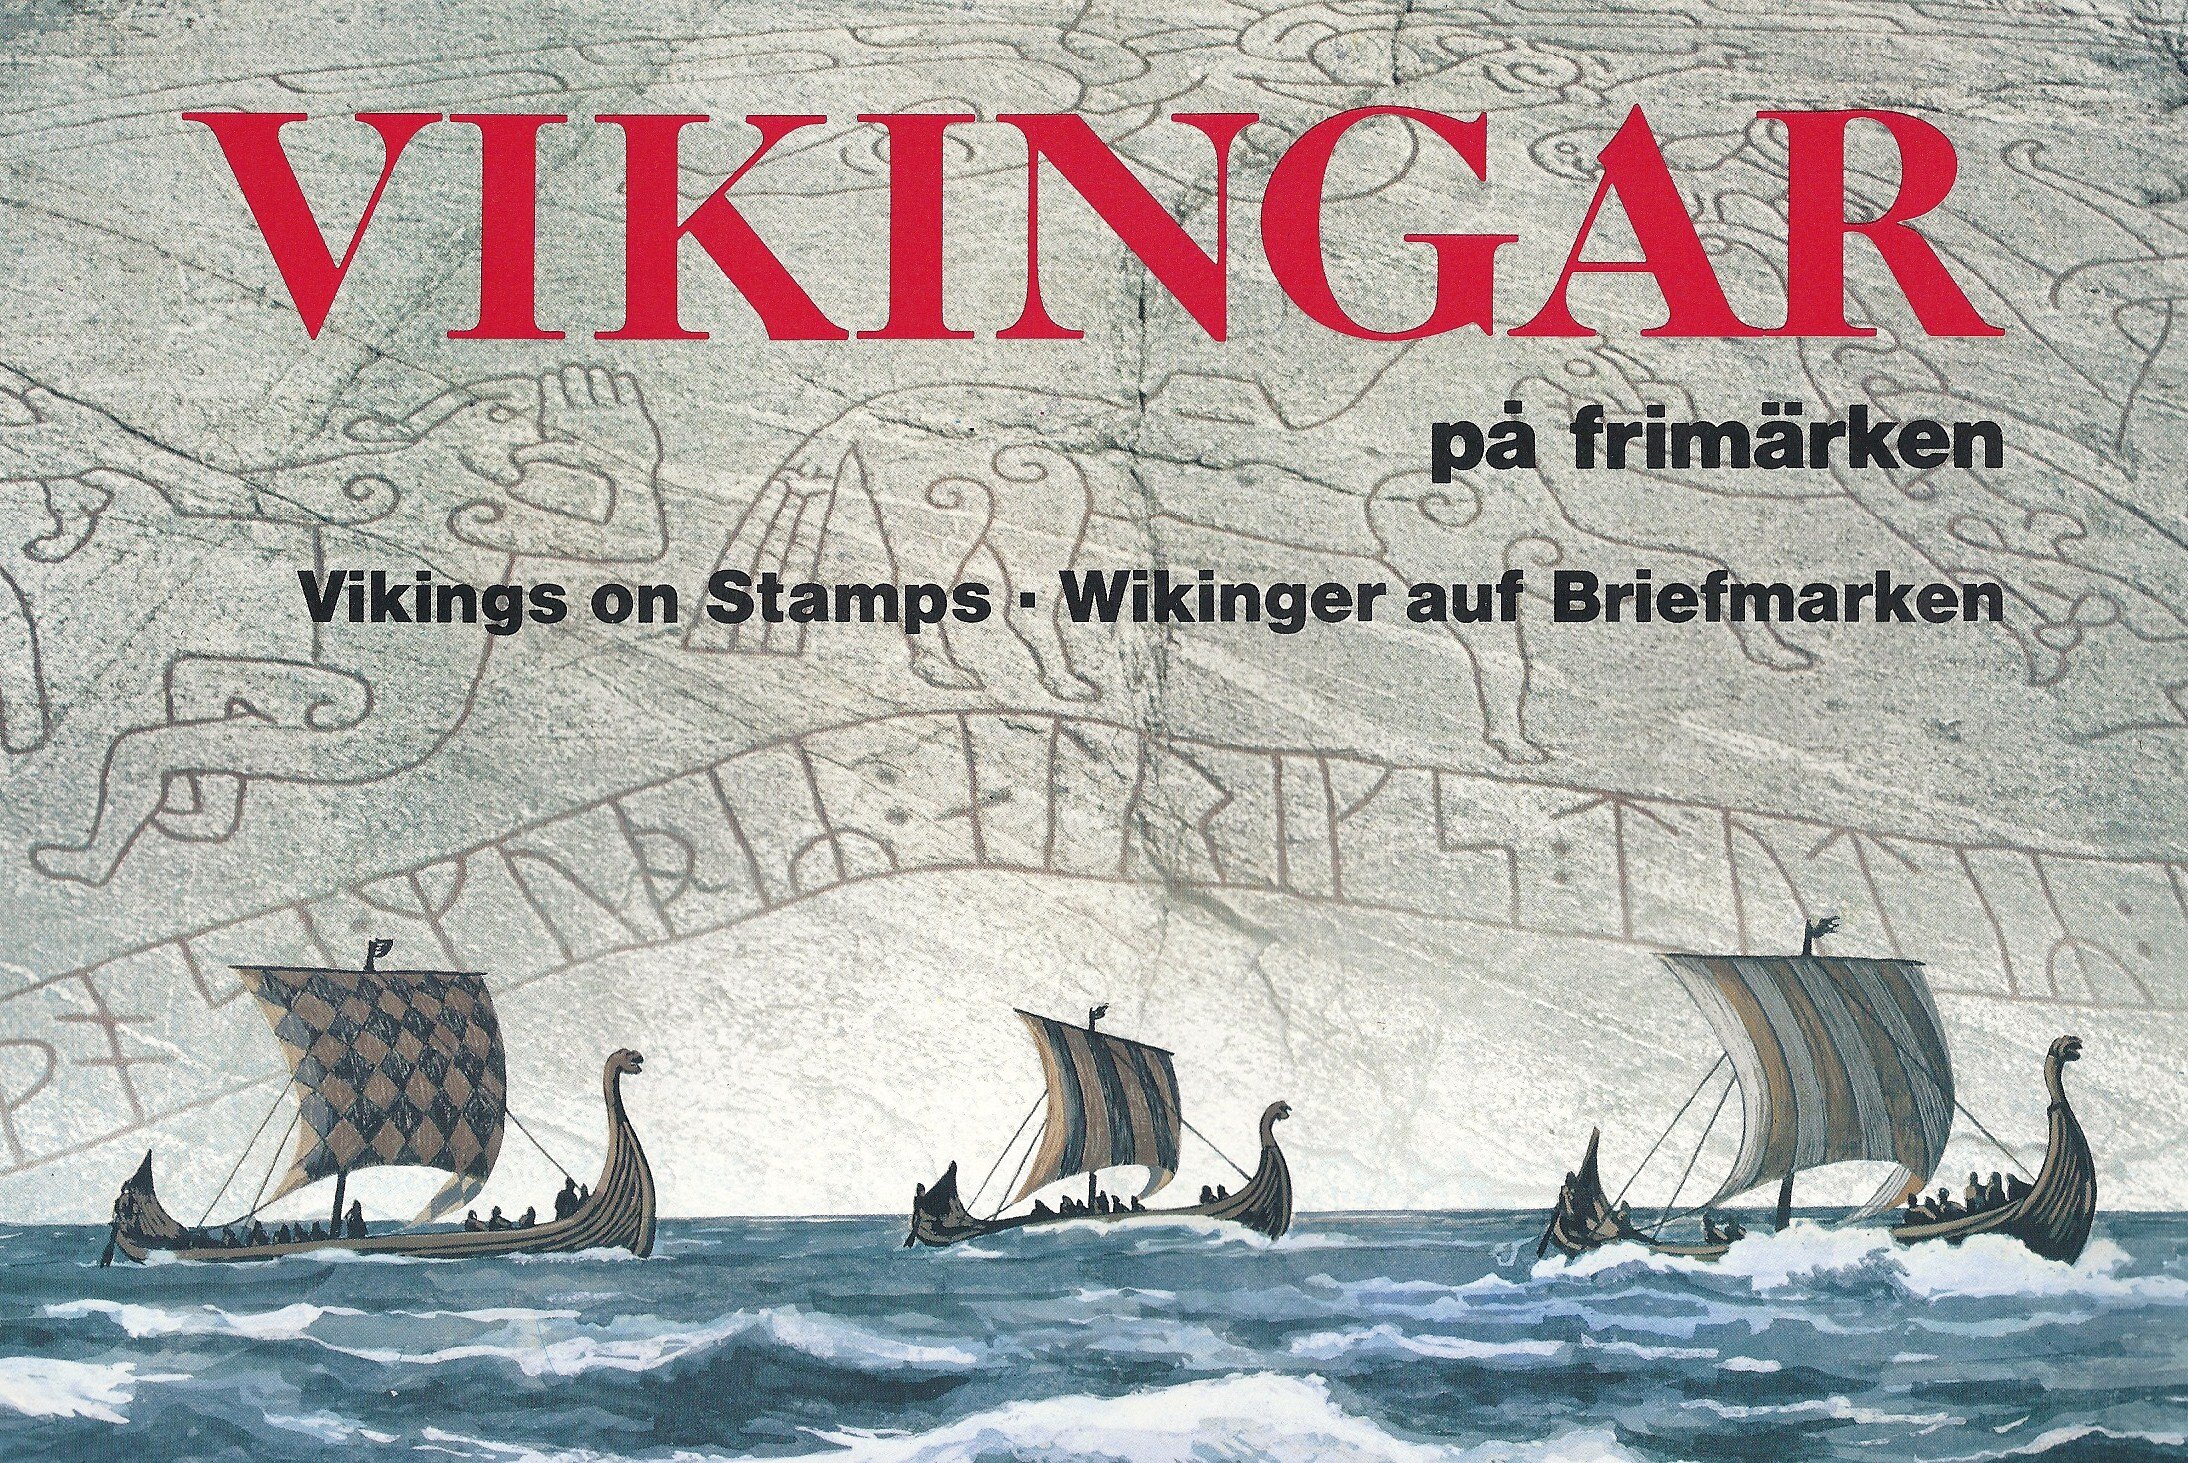 Vikingar på frimärken, foto Theo Koning.jpg